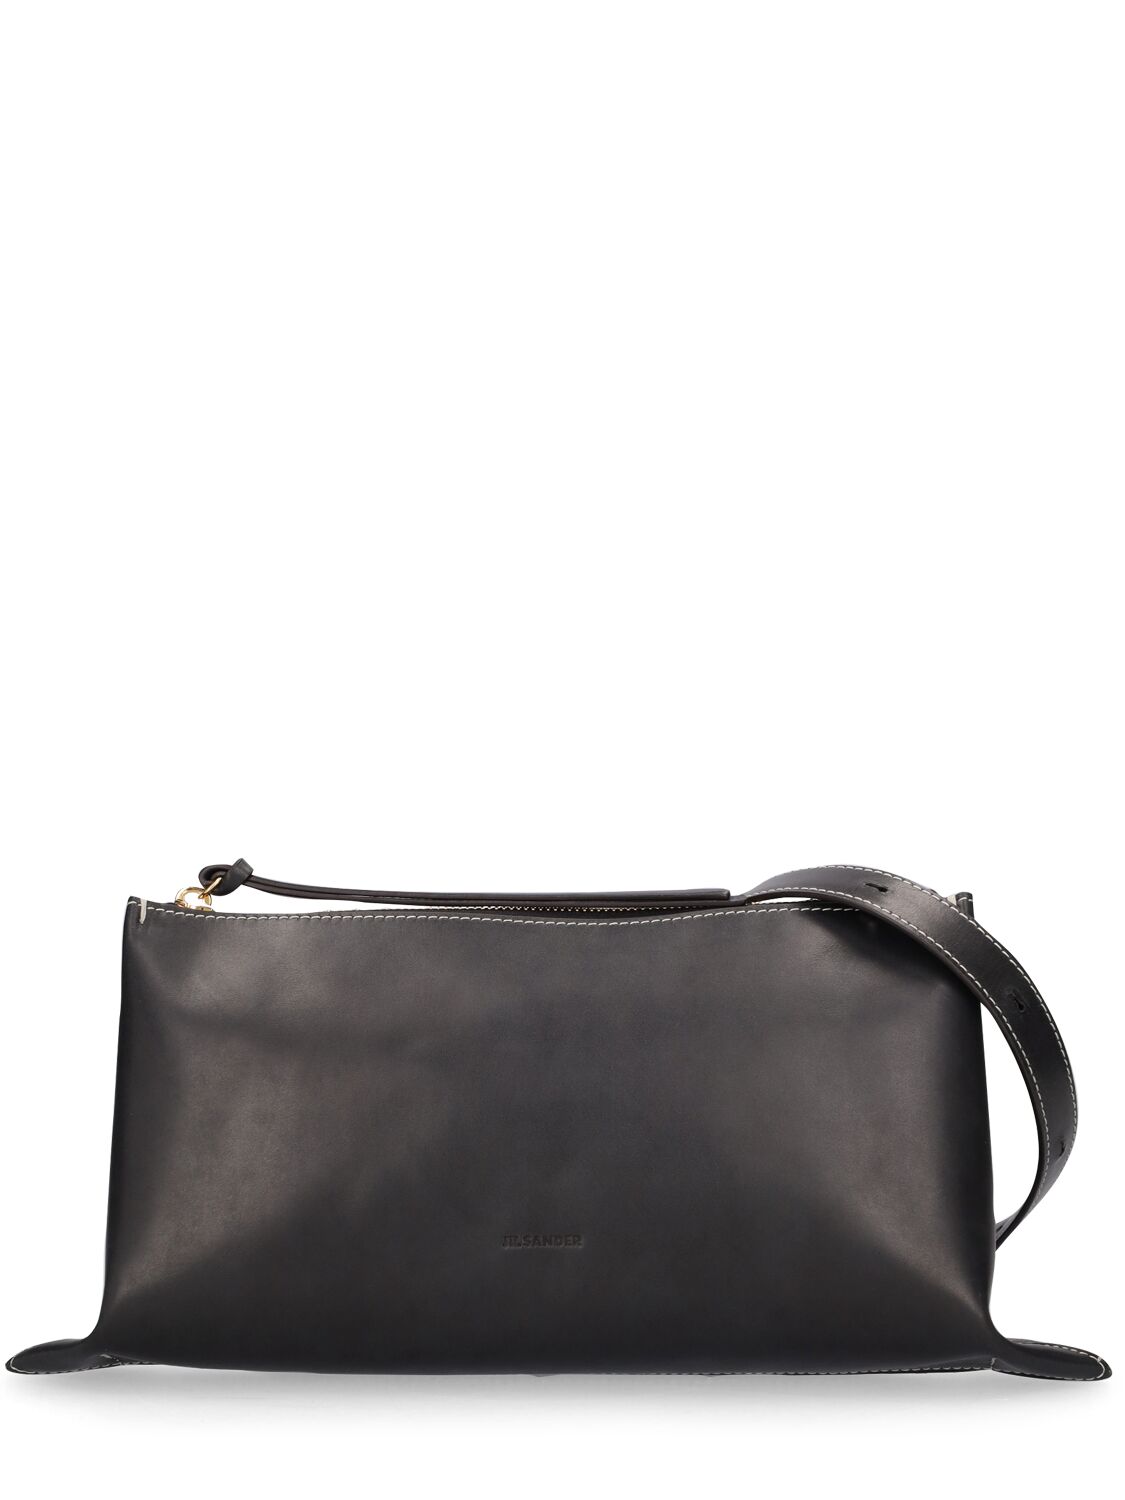 Jil Sander Small Empire Leather Shoulder Bag In Black